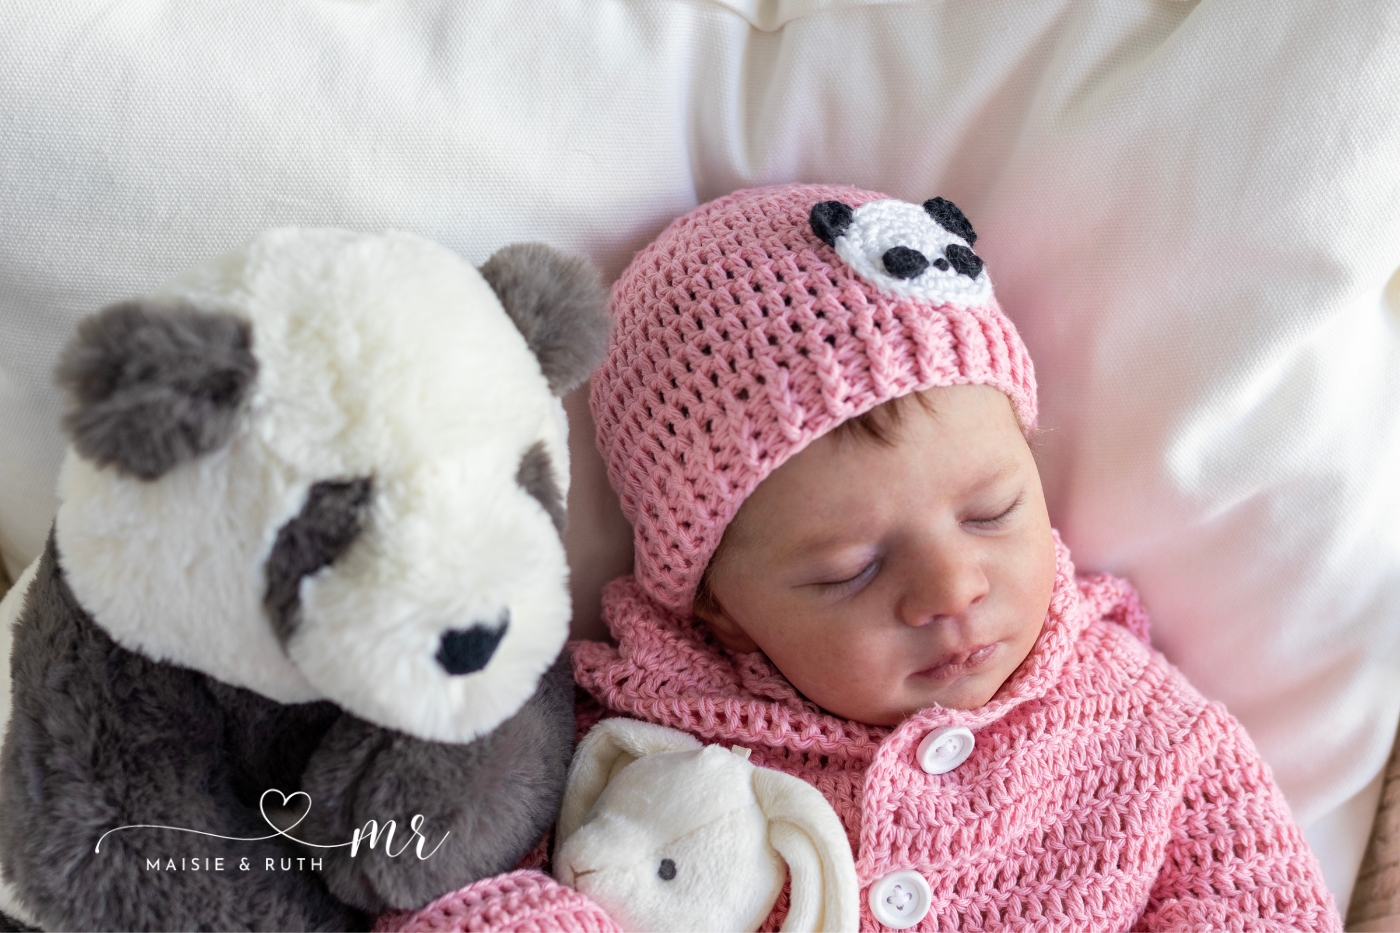 panda crochet baby hat free pattern on baby's head